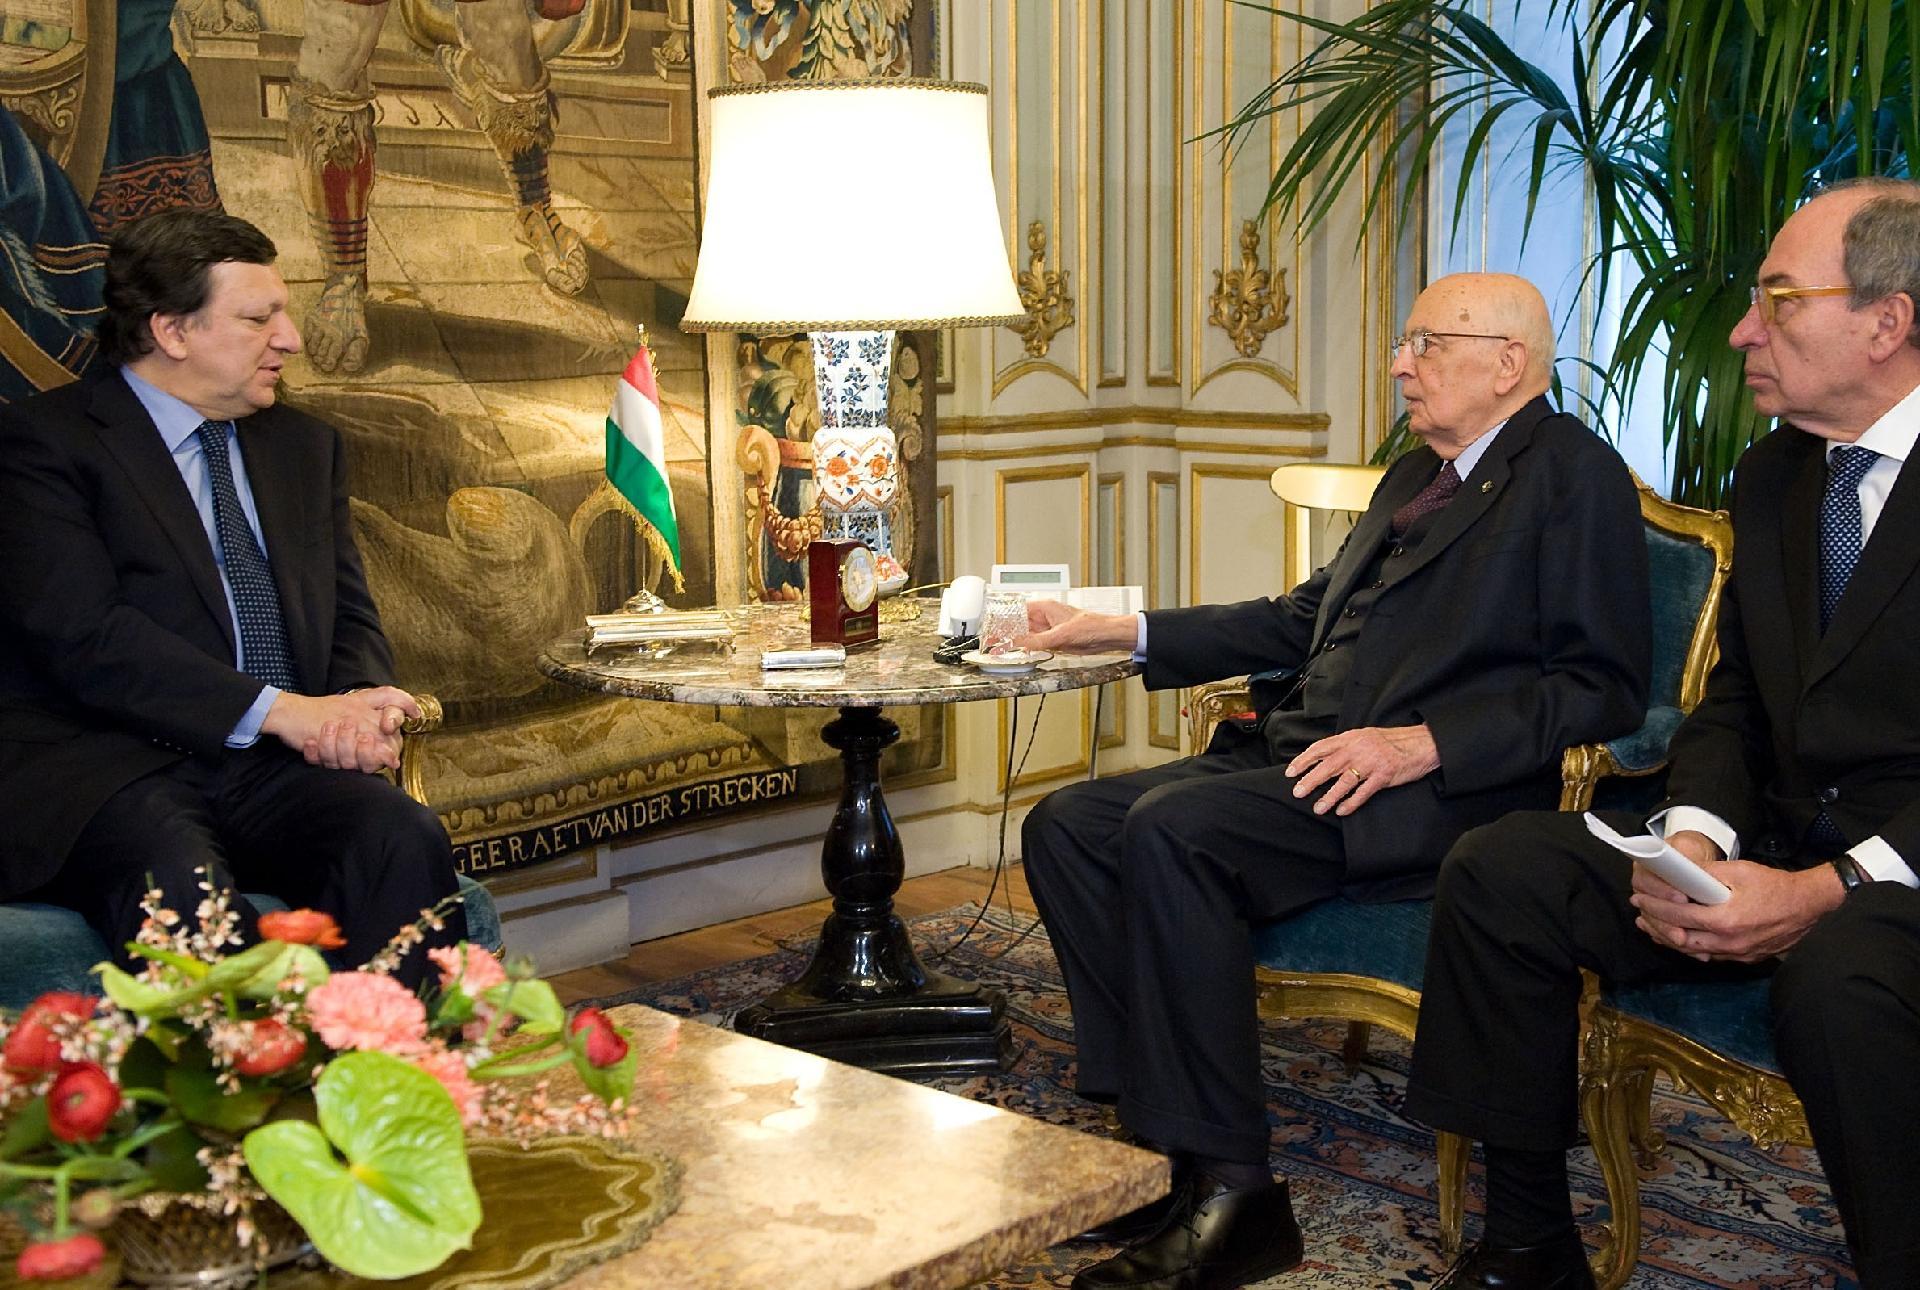 Il Presidente Giorgio Napolitano, con a fianco il Sottosegretario Alfredo Mantica, nel corso dei colloqui con Josè Manuel Barroso, Presidente della Commissione Europea